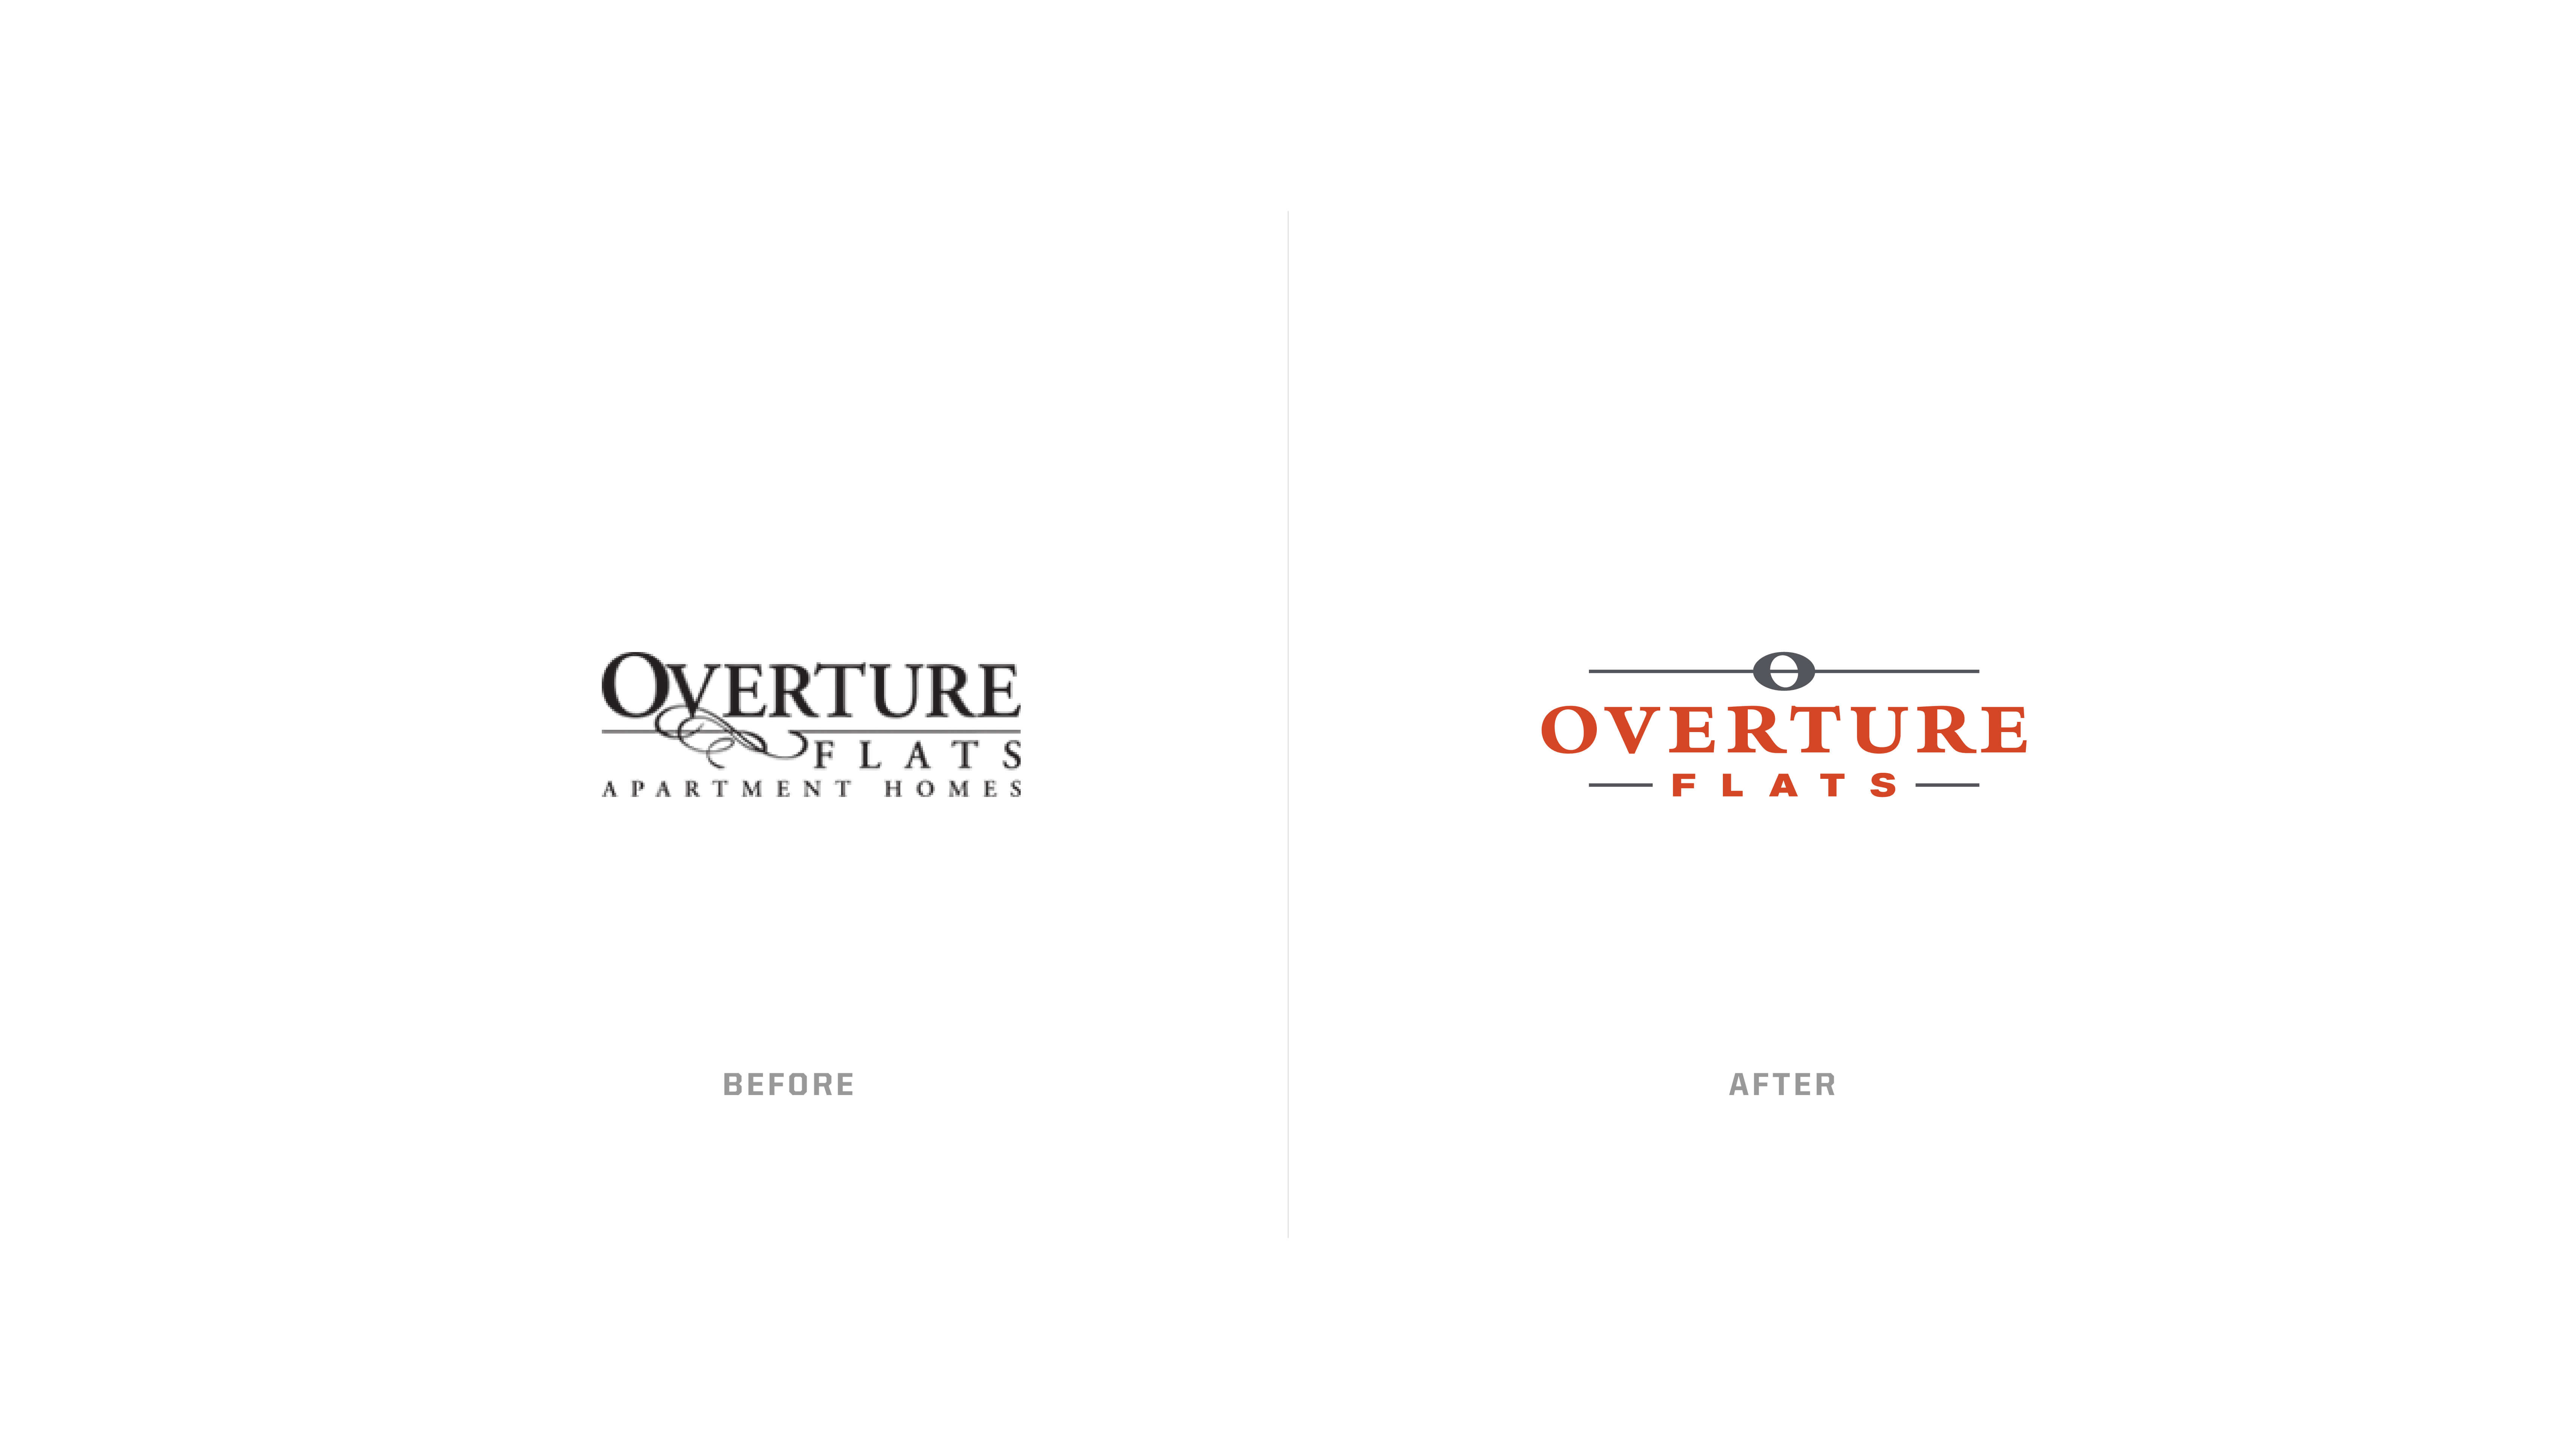 Regency - Overture Flats - Branding